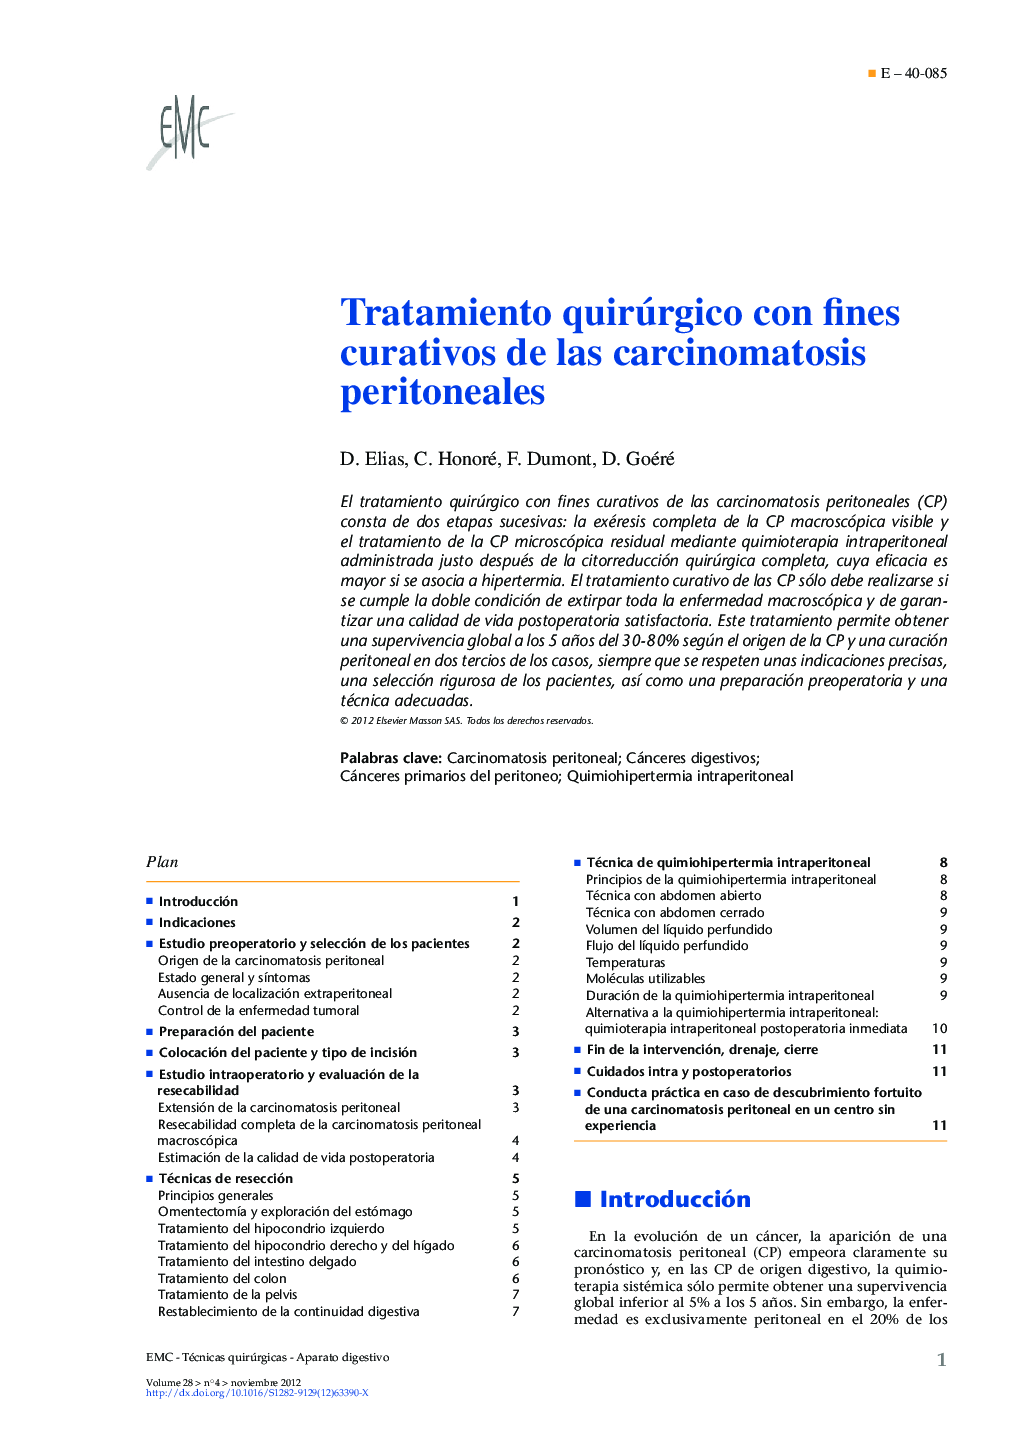 Tratamiento quirúrgico con fines curativos de las carcinomatosis peritoneales